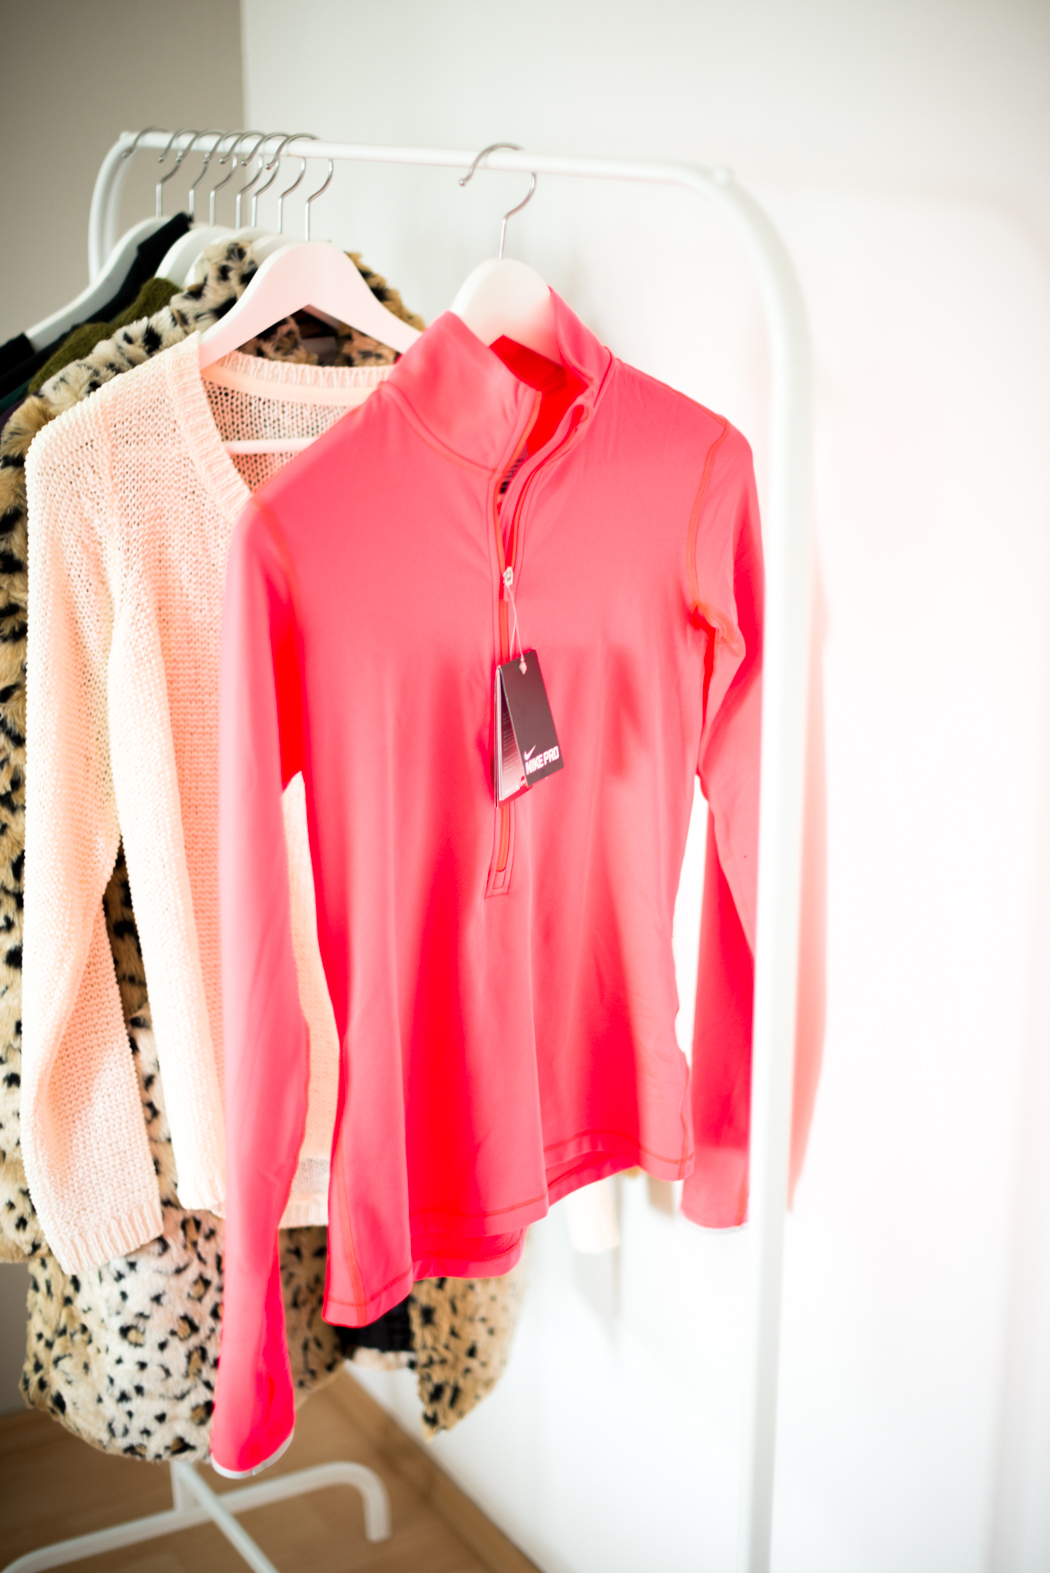 Shoppinghaul-Lindarella-Fashionblogger-November-9